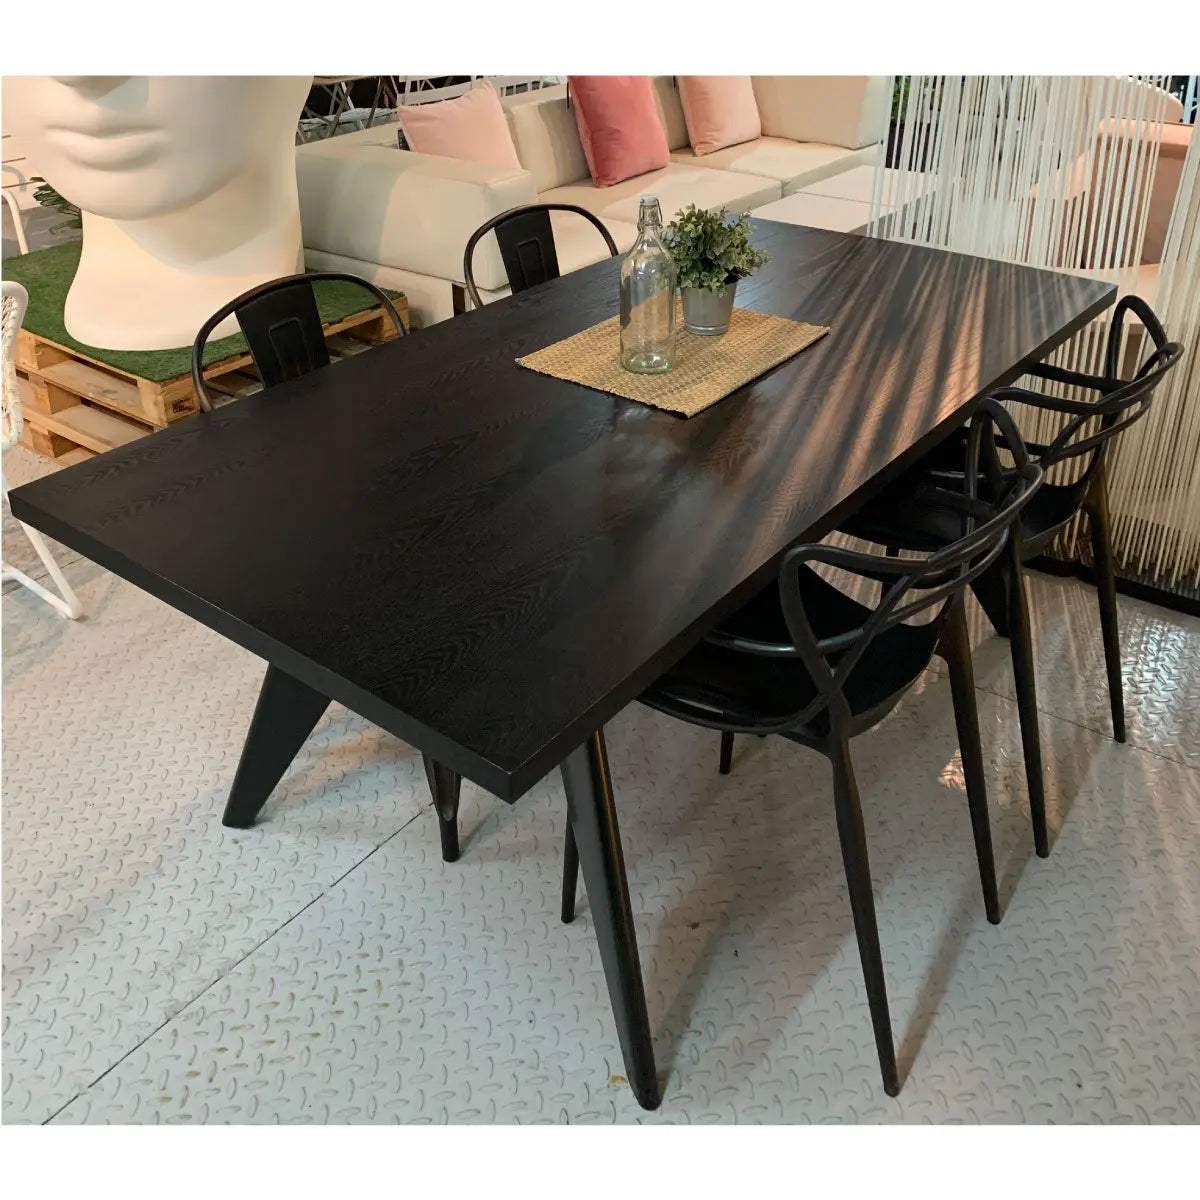 Art 6-seater table black Desert River Rentals